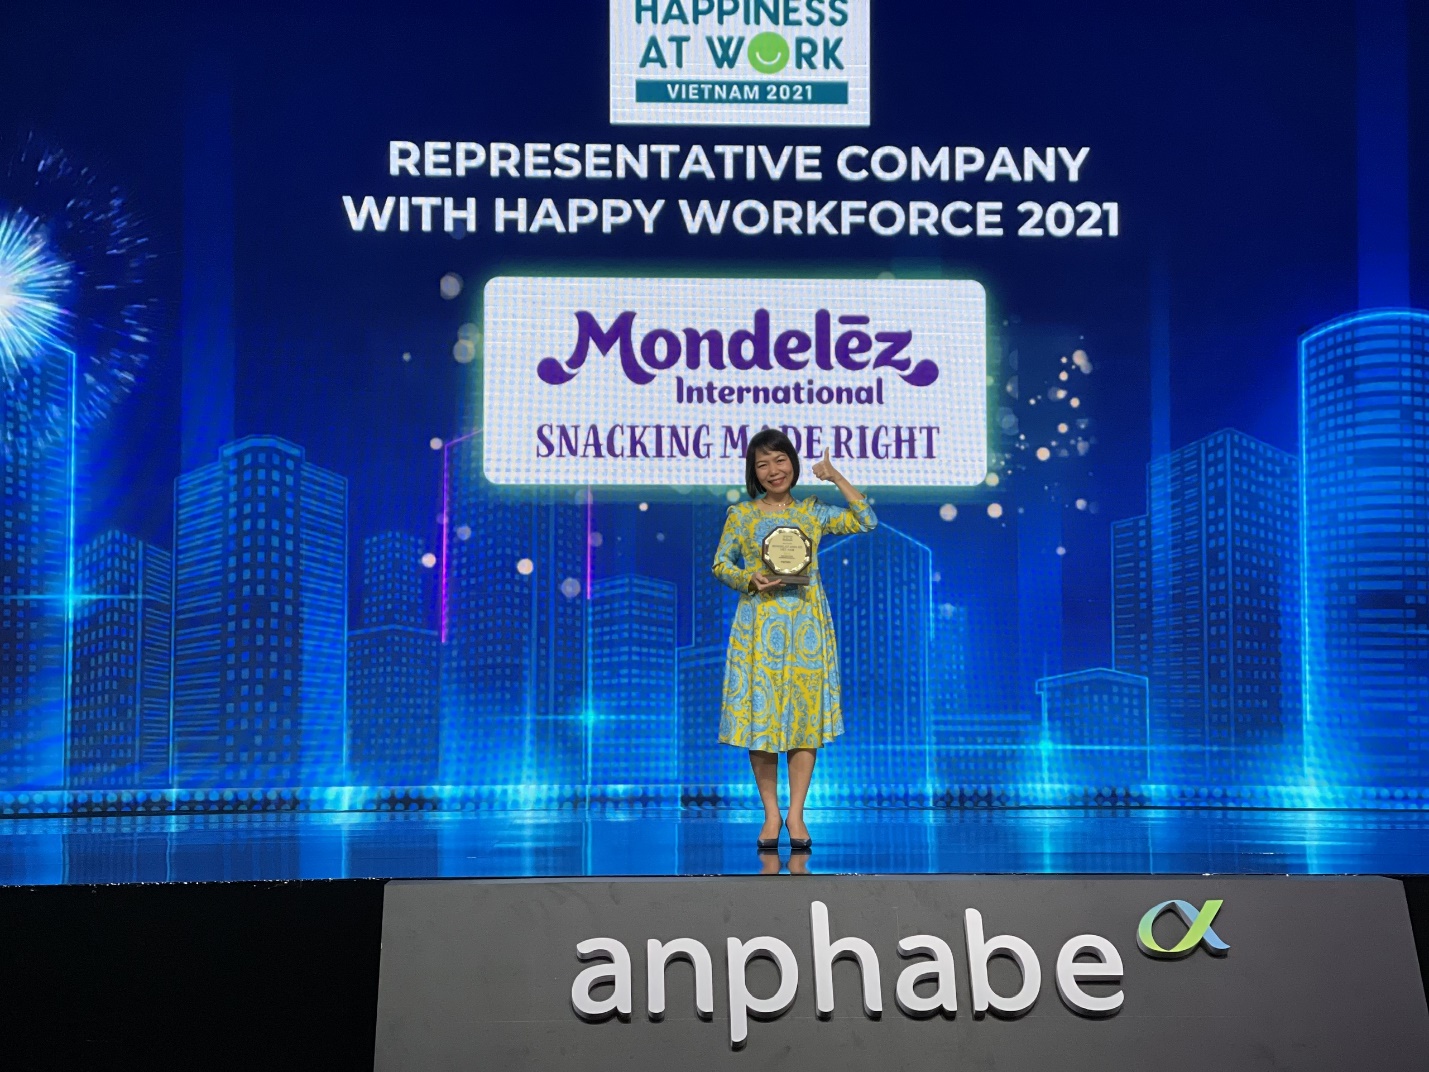 Mondelez Kinh Do được vinh danh Top 10 doanh nghiệp có nguồn nhân lực hạnh phúc nhất năm 2021 - Ảnh 1.